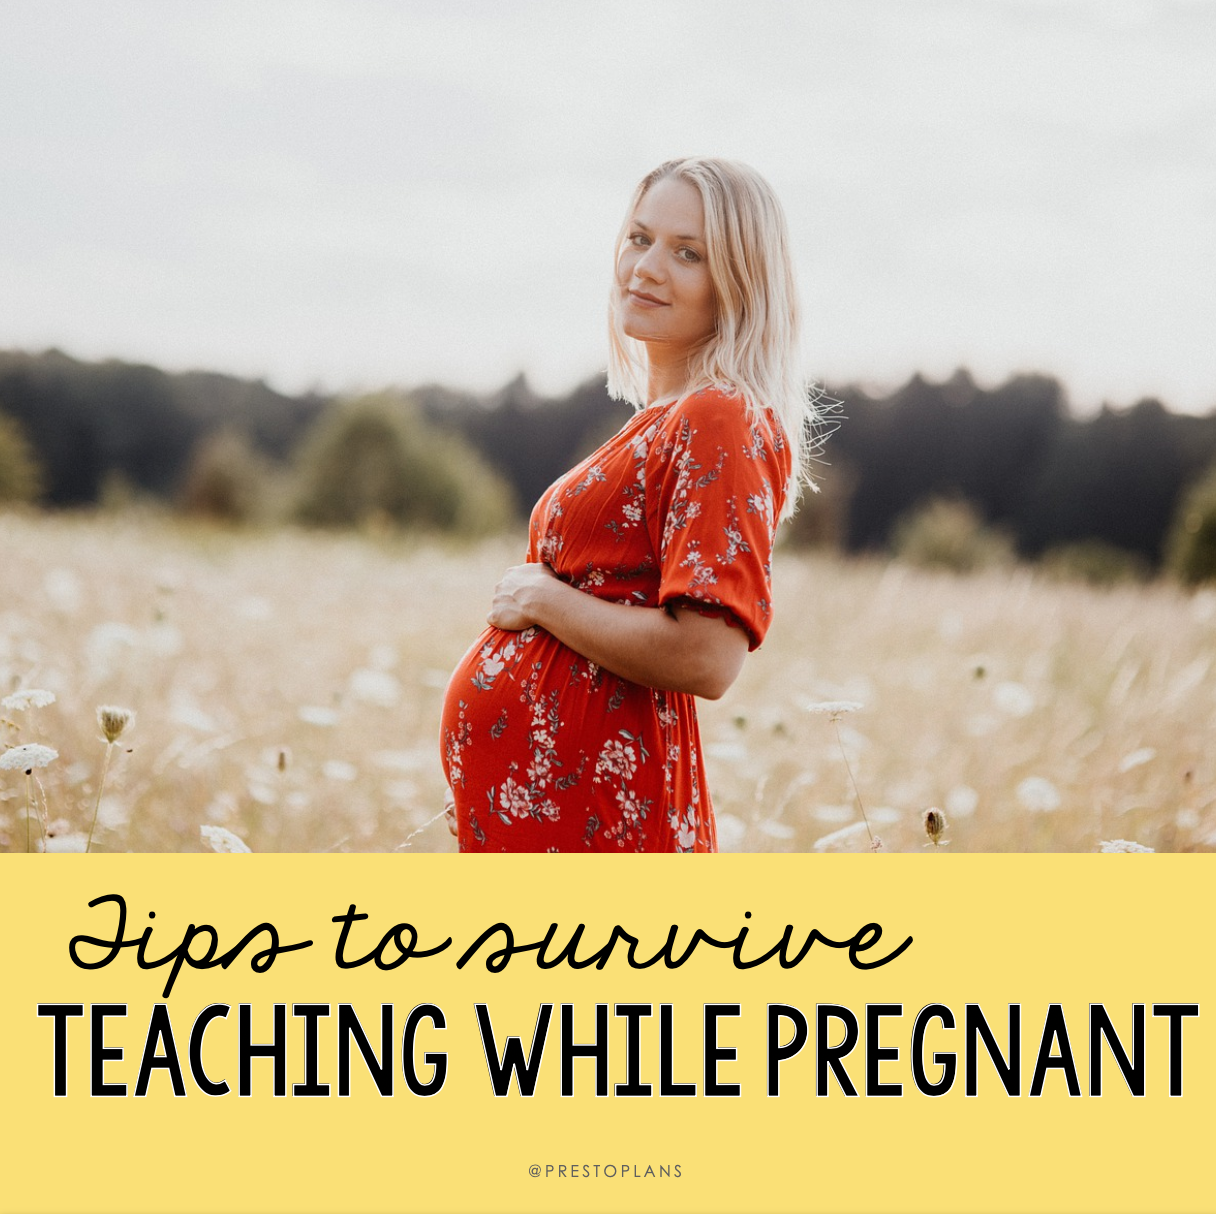 Teaching while pregnant